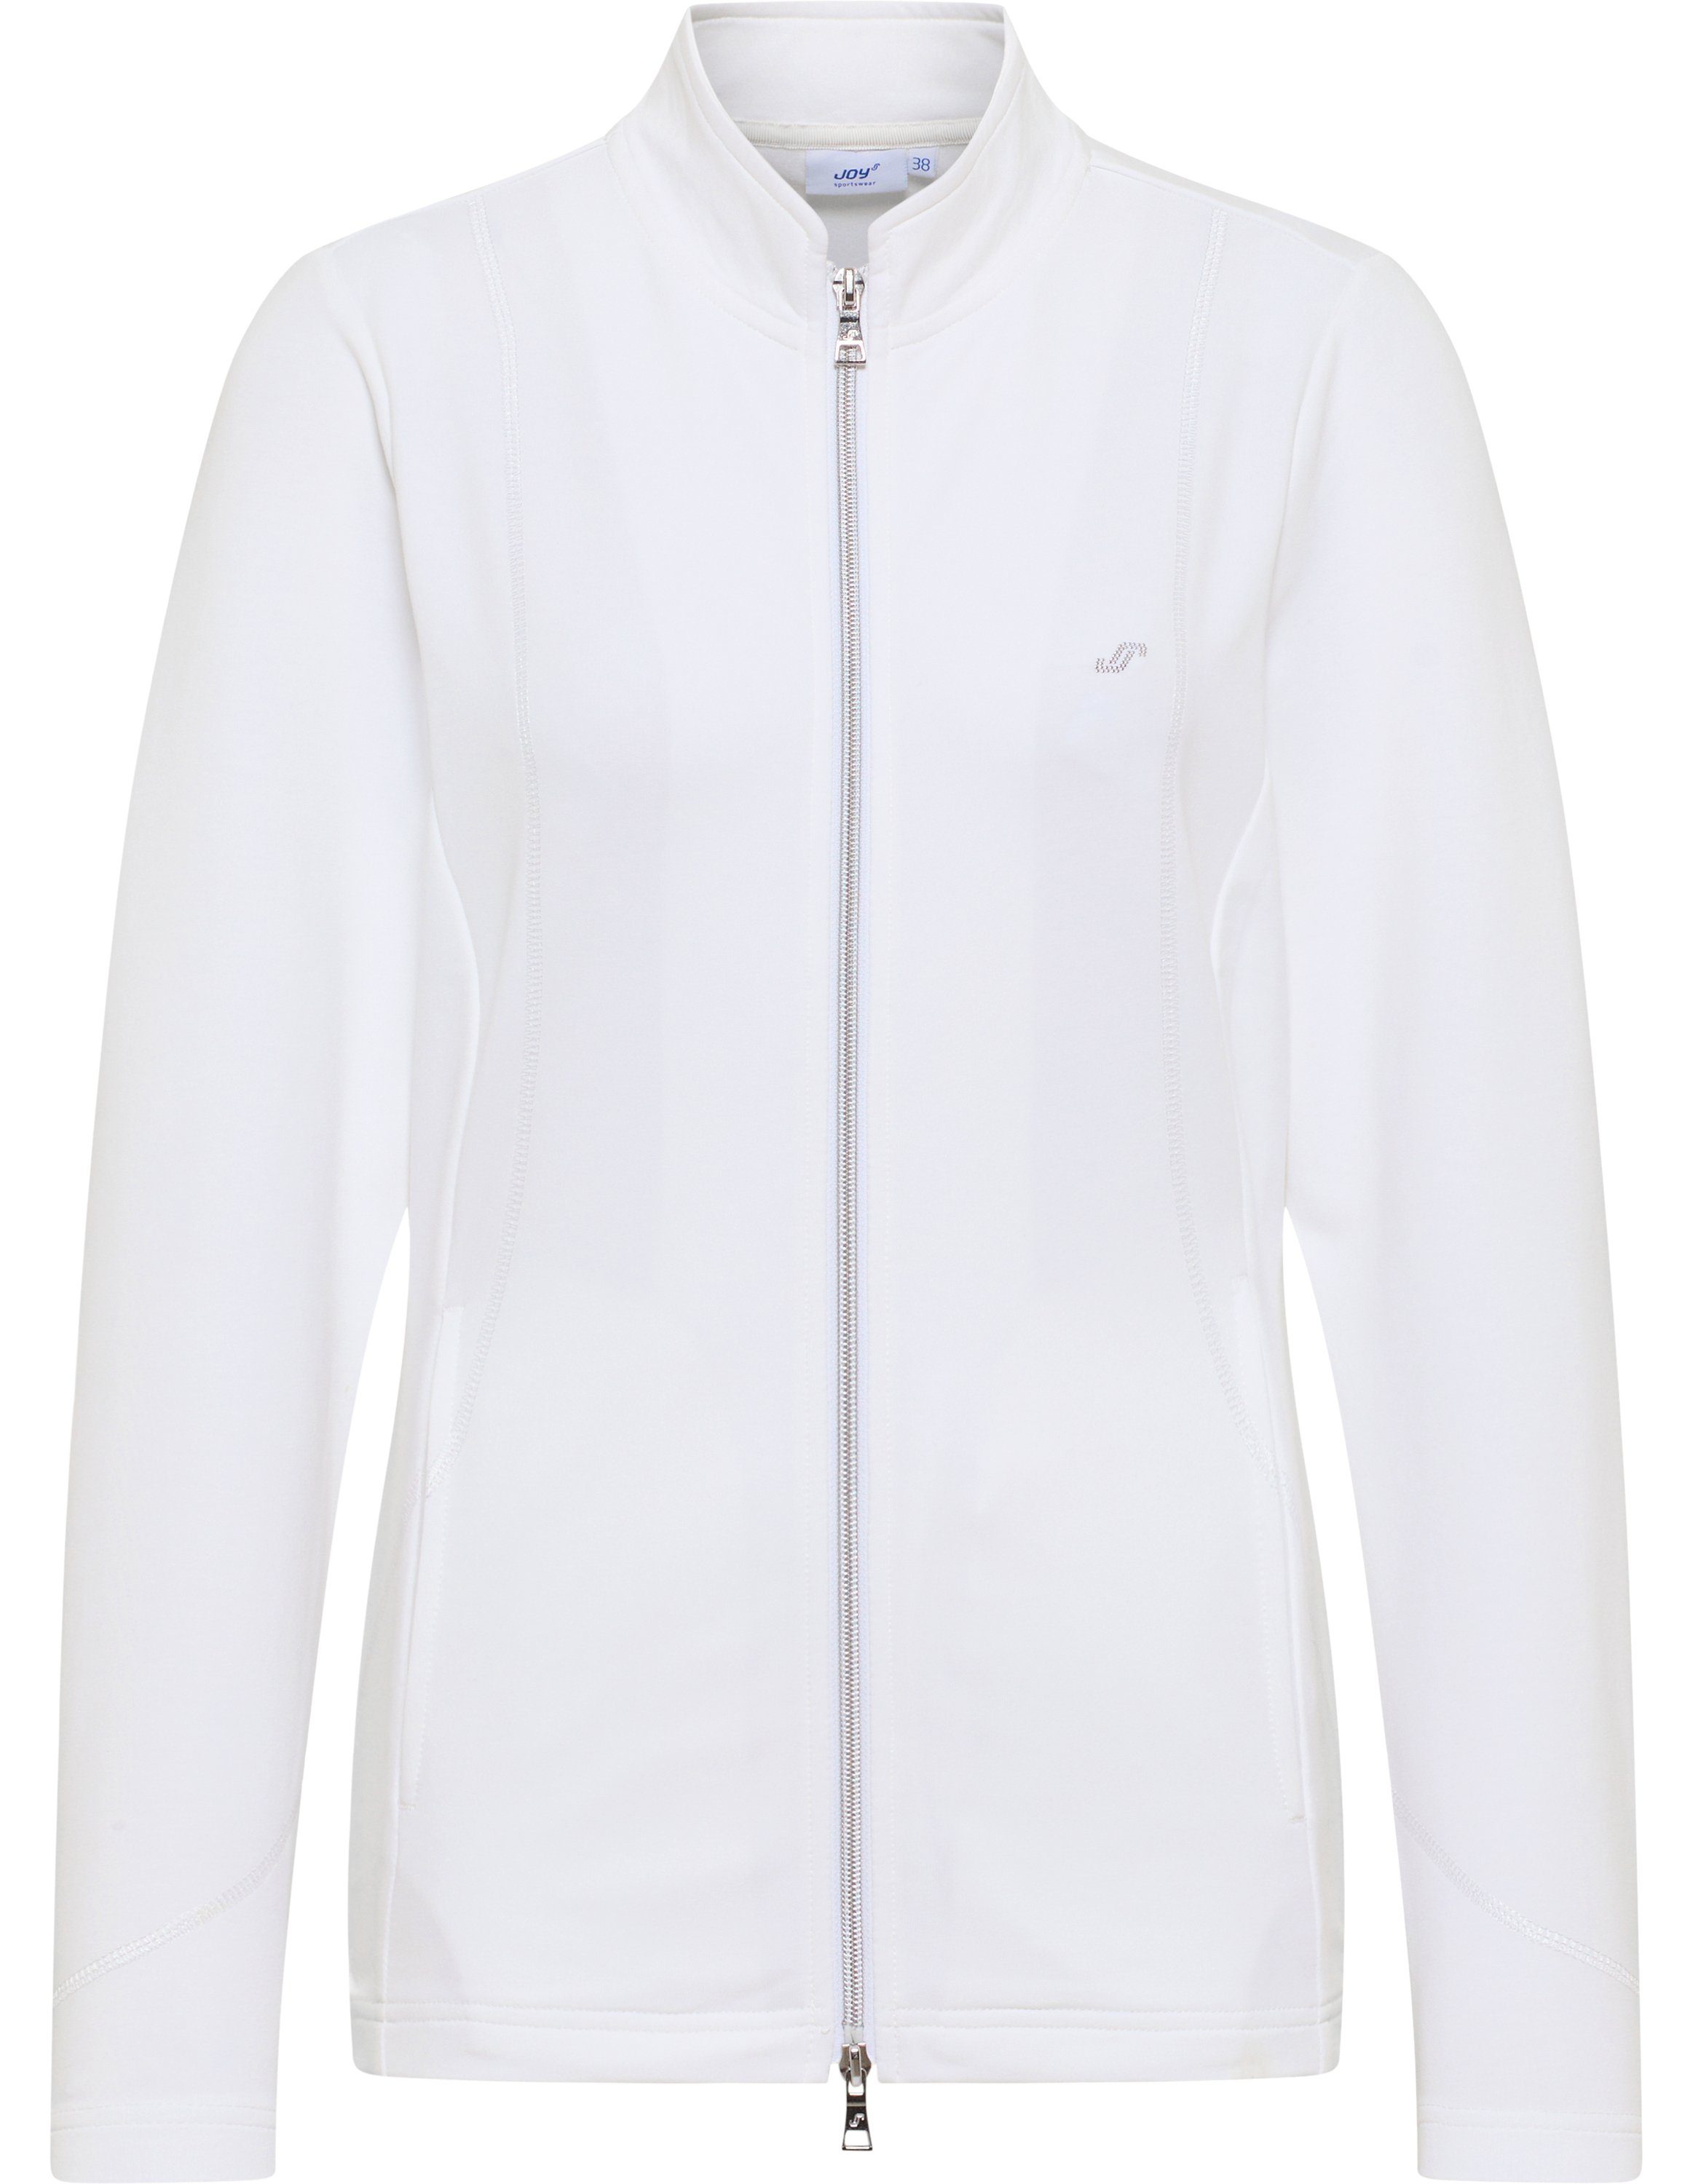 Joy Trainingsjacke DORIT white Sportswear Jacke